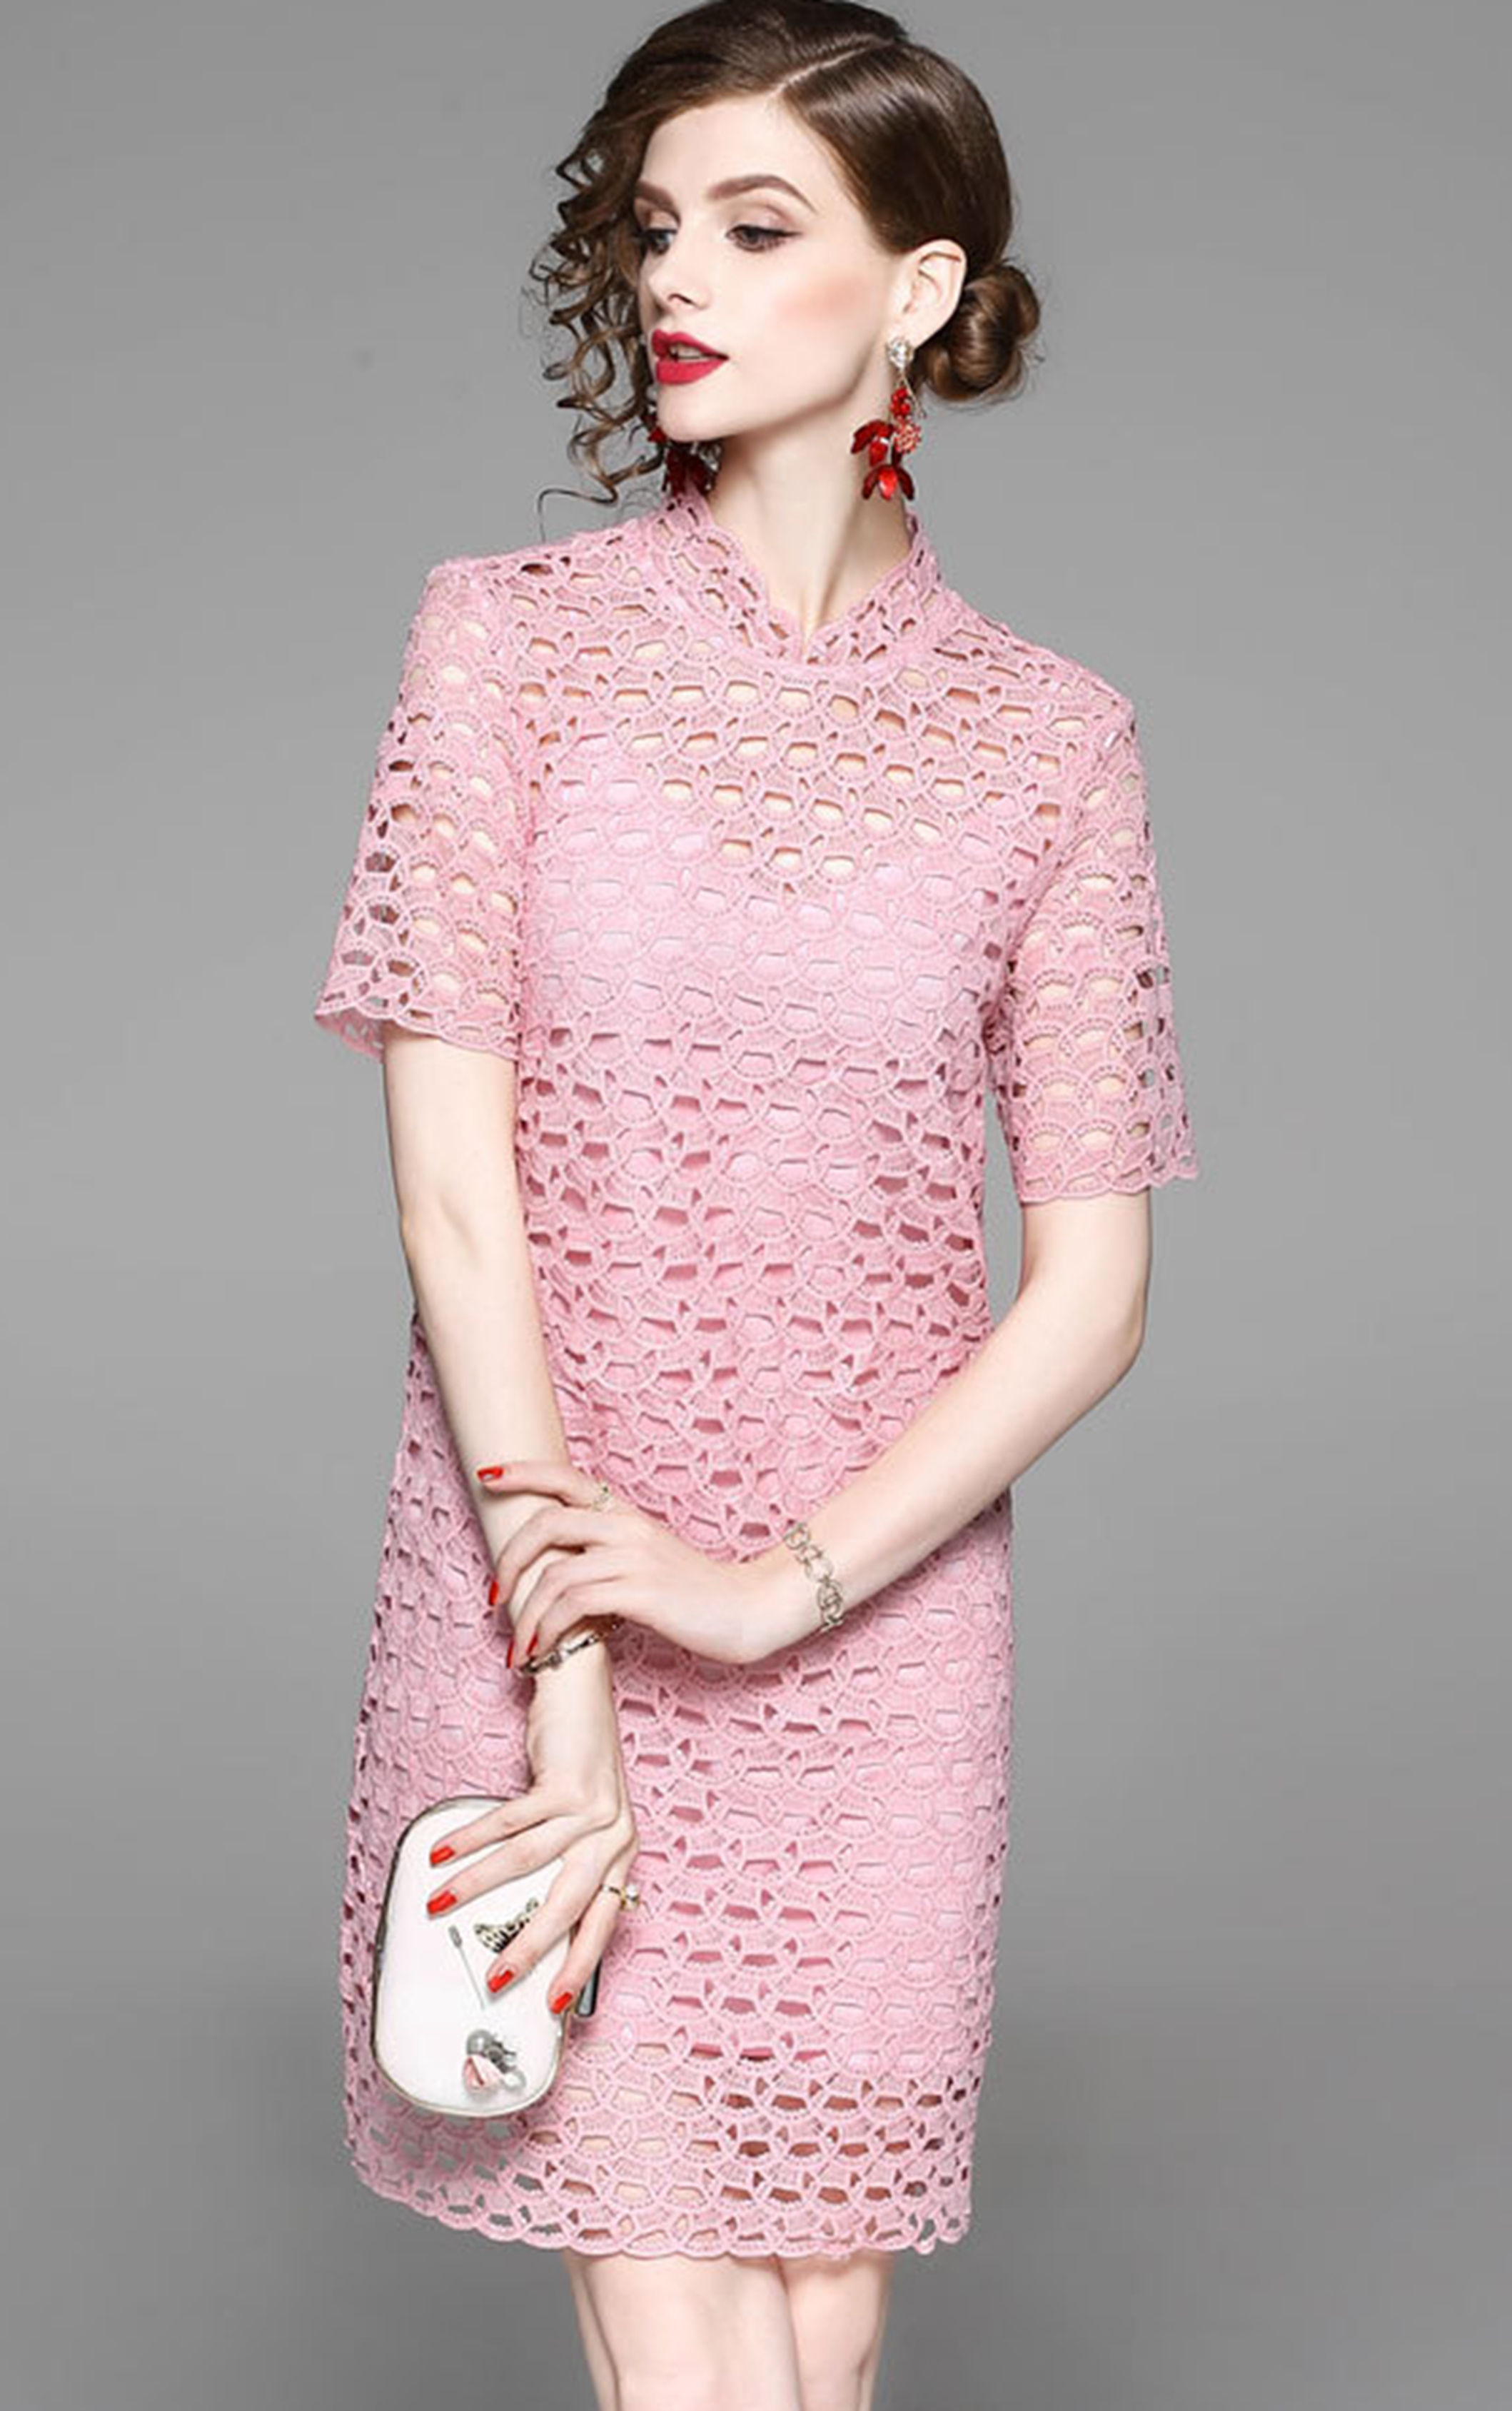 夏季新款欧美时尚连衣裙…蕾丝纯色系带拼接短